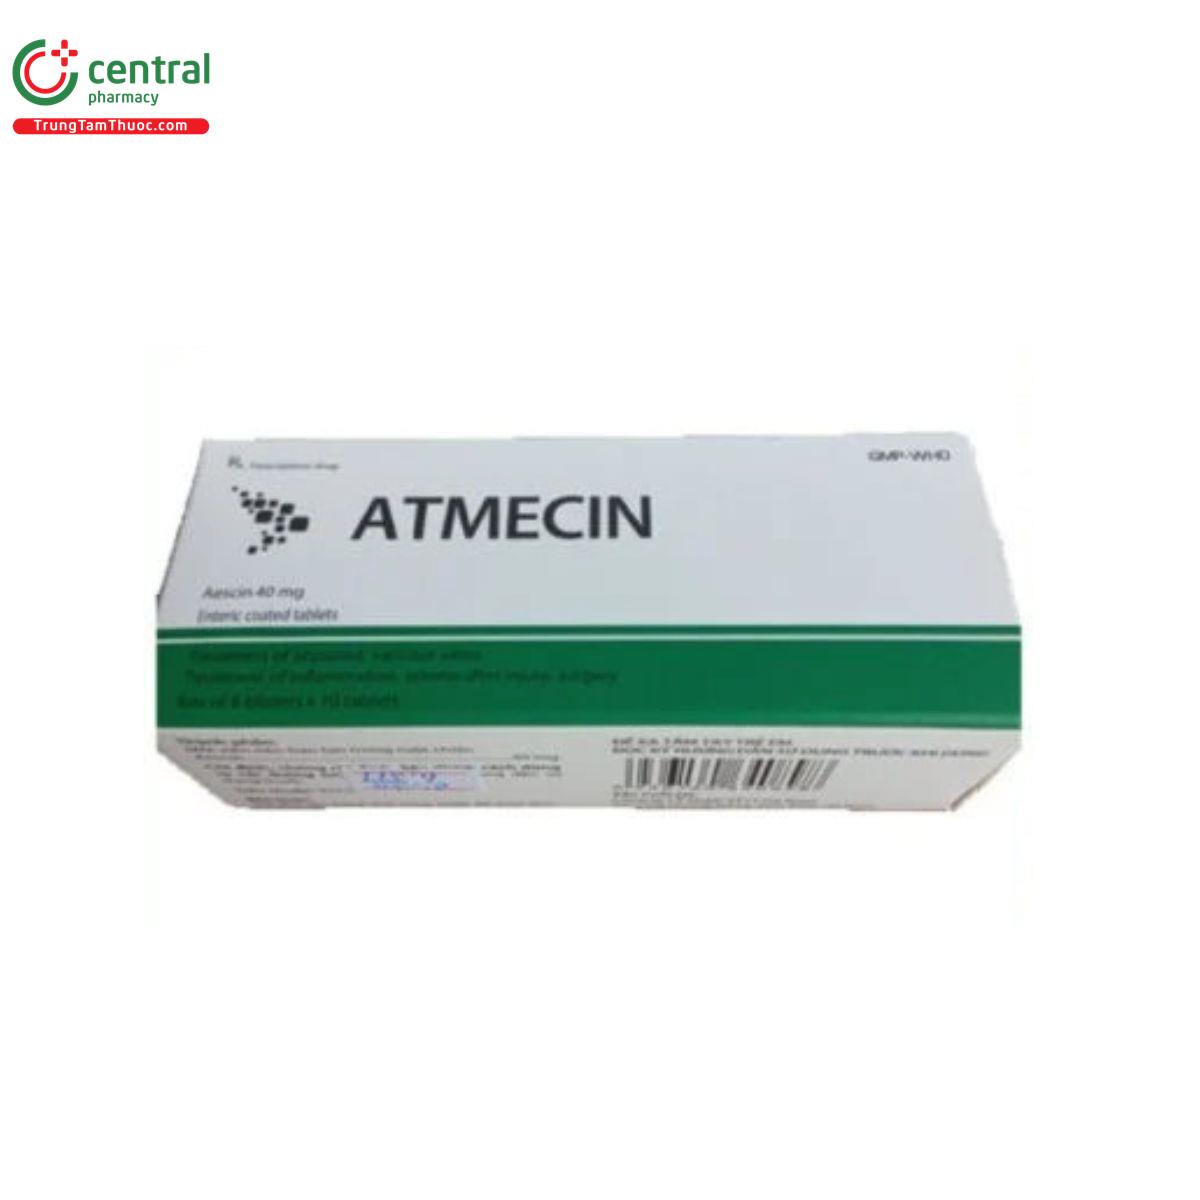 thuoc atmecin 2 E1347